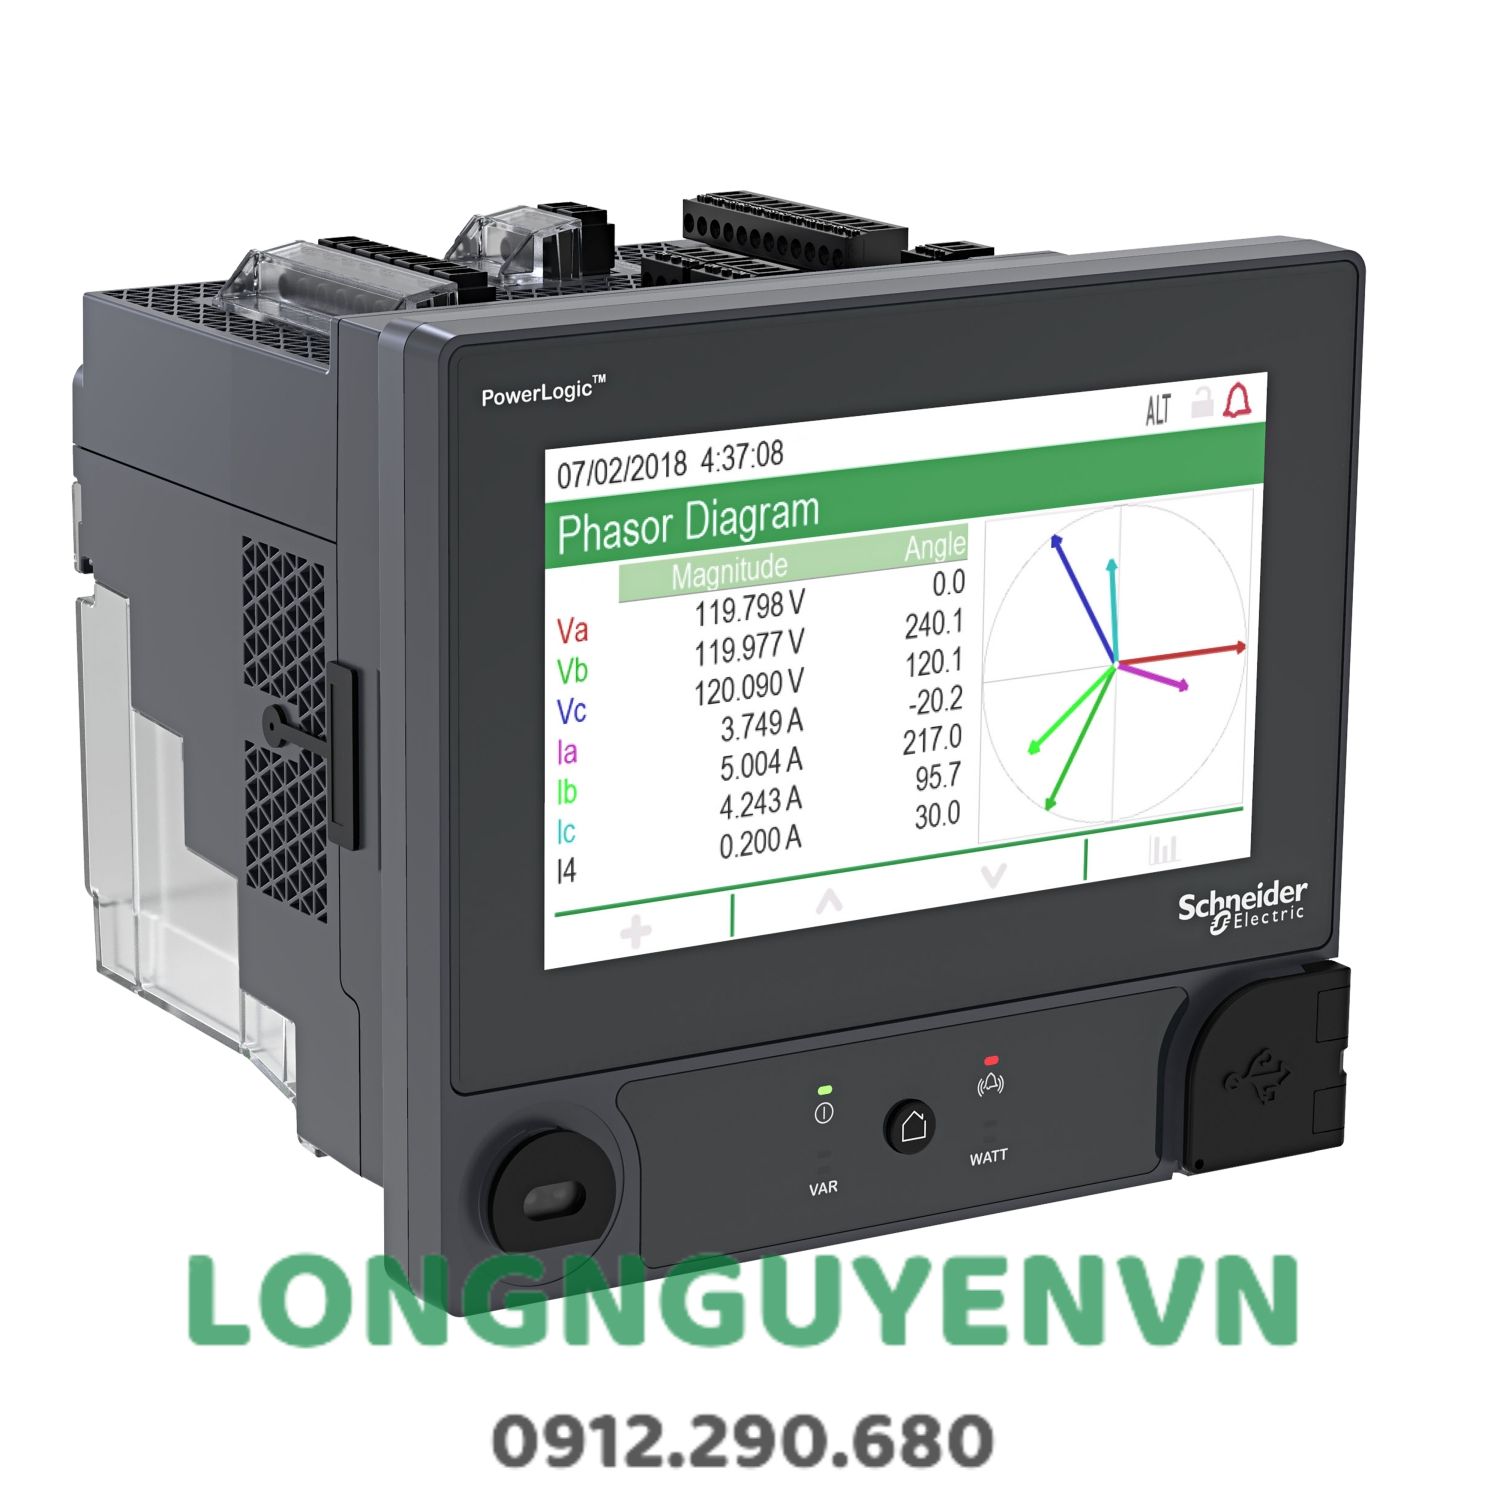 Đồng hồ PowerLogic™ ION9000, LVDC, ngàm DIN, không màn hình, bộ CTNH